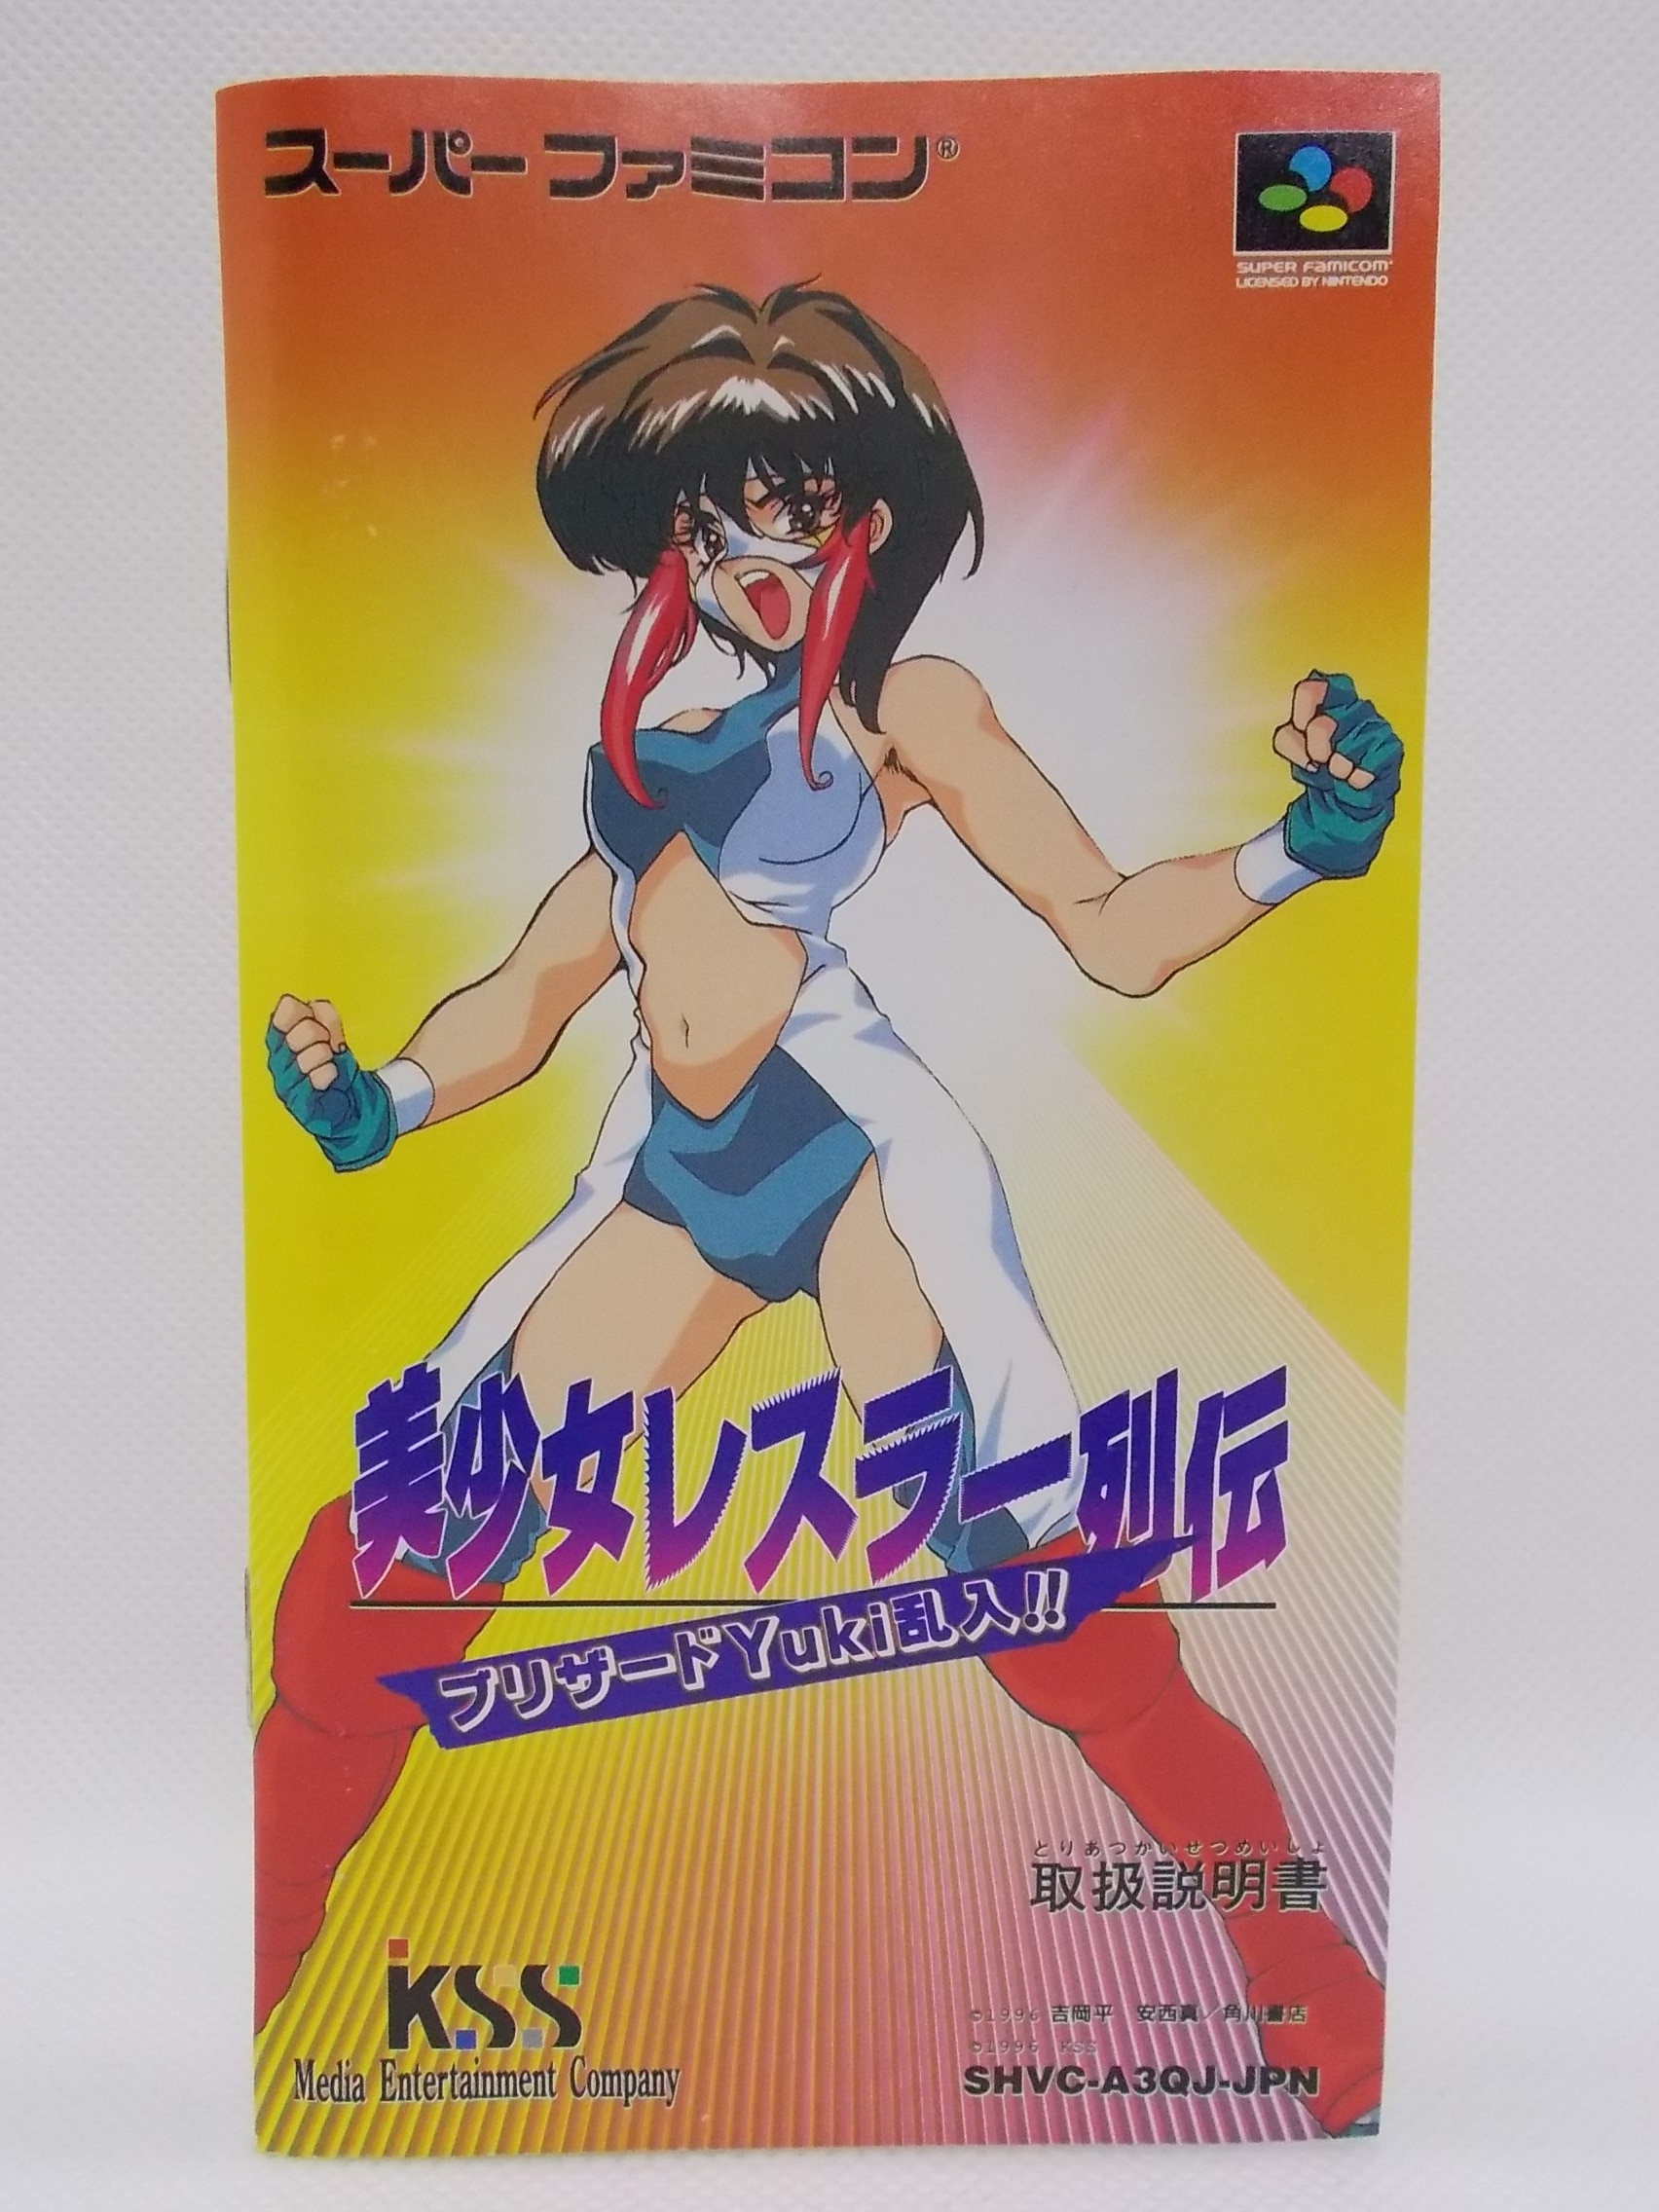 スーパーファミコンソフト『美少女レスラー列伝』カタログポスター 